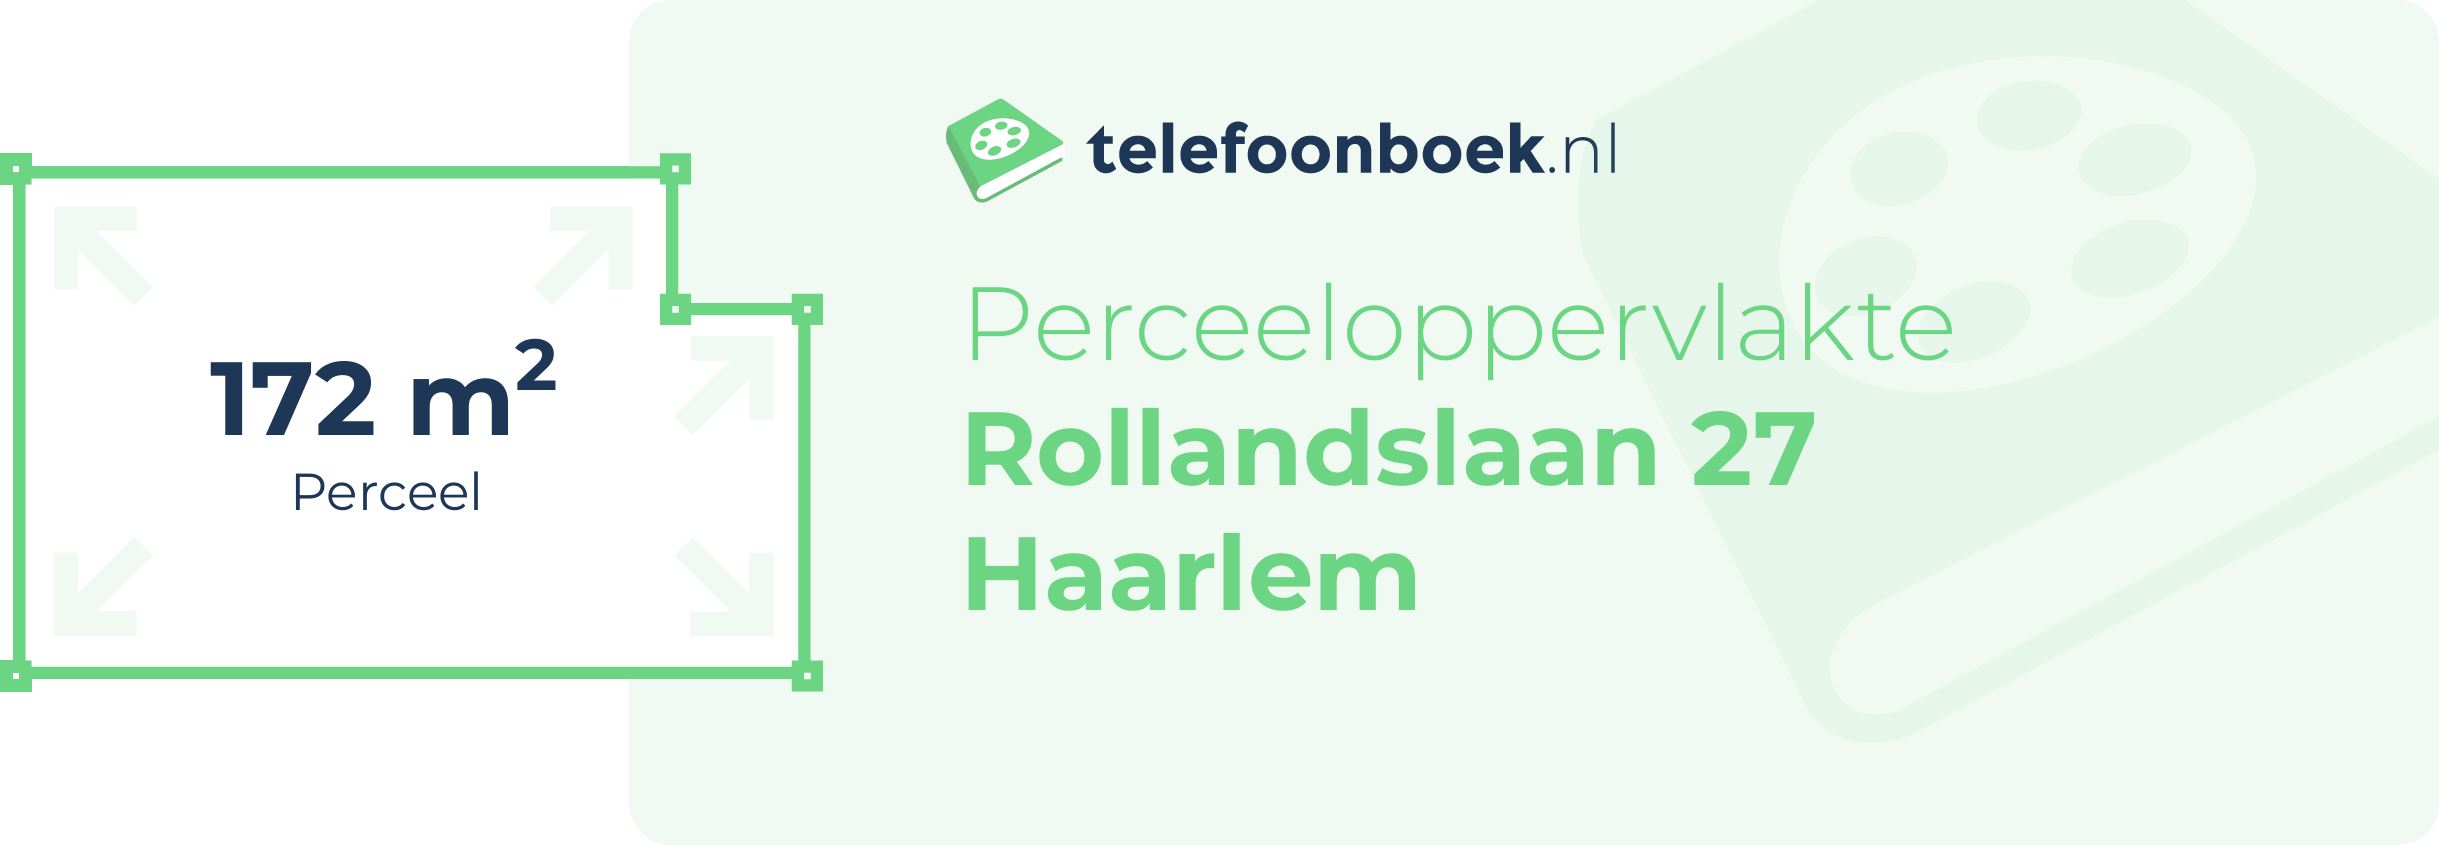 Perceeloppervlakte Rollandslaan 27 Haarlem